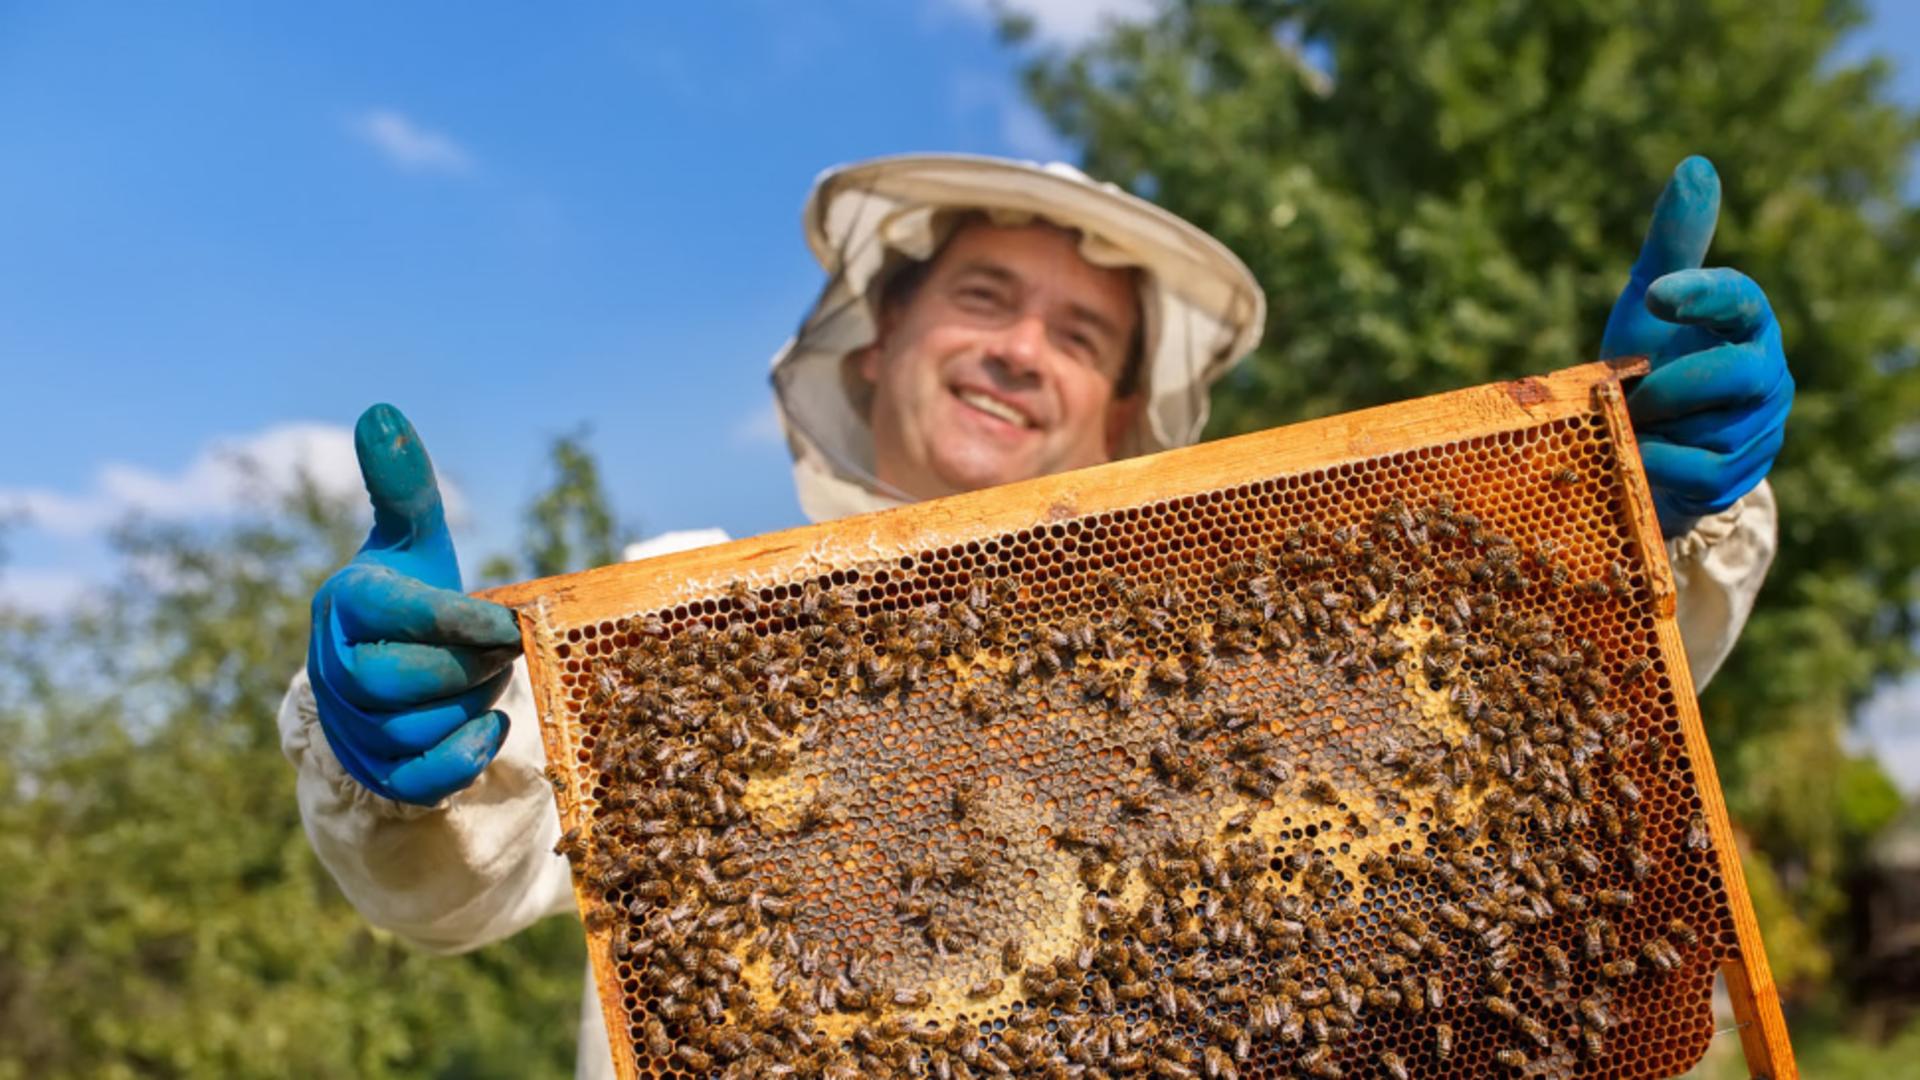 Schema de ajutor pentru apicultori a fost aprobată 